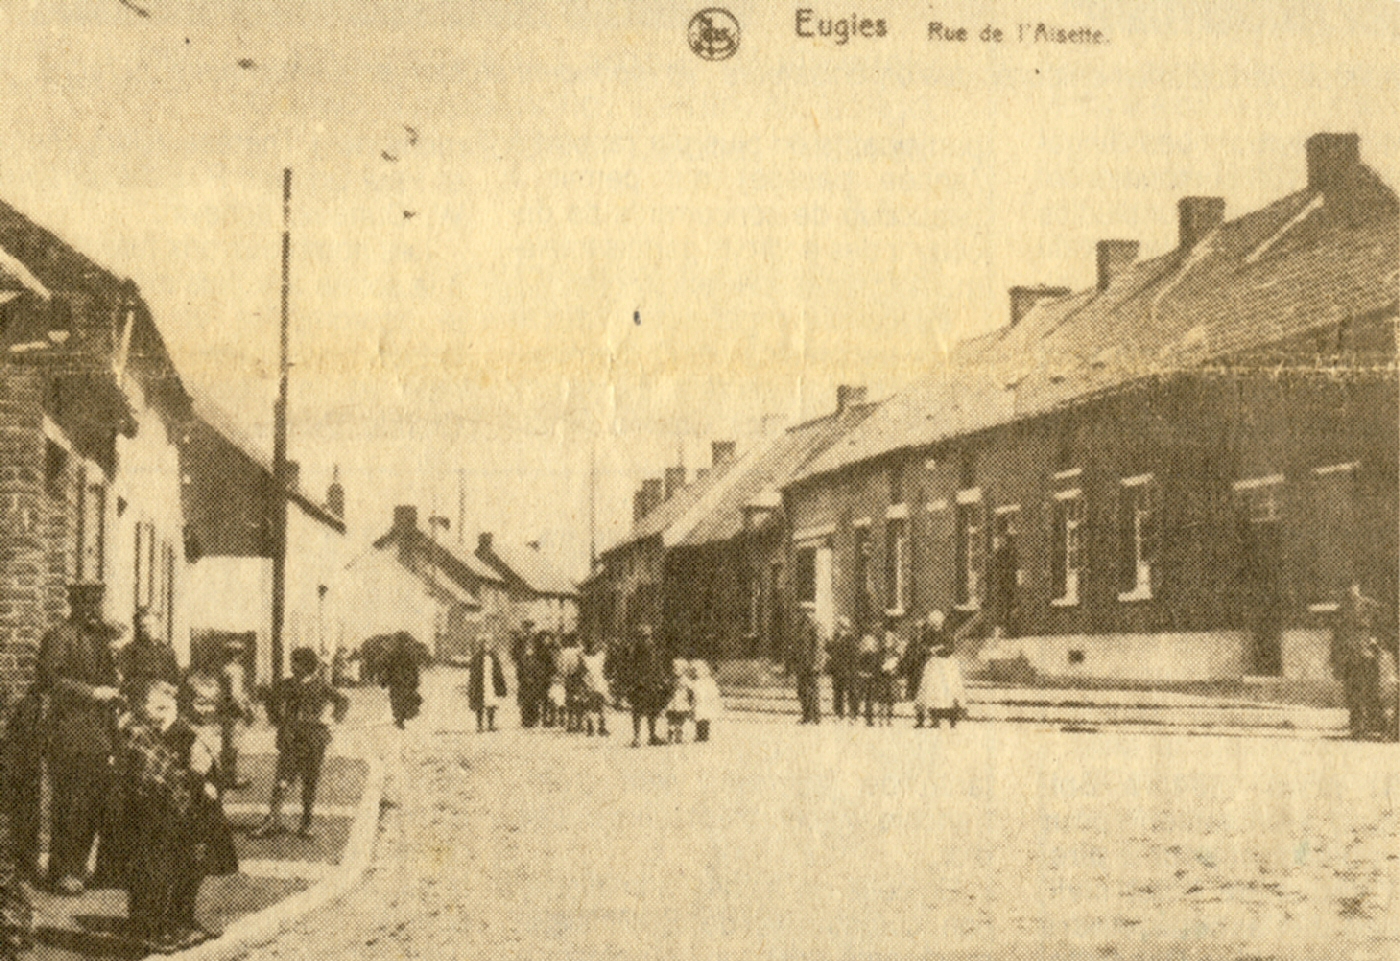 Eugies : rue de l'Aisette qui deviendra la rue Winston Churchill en 1908.